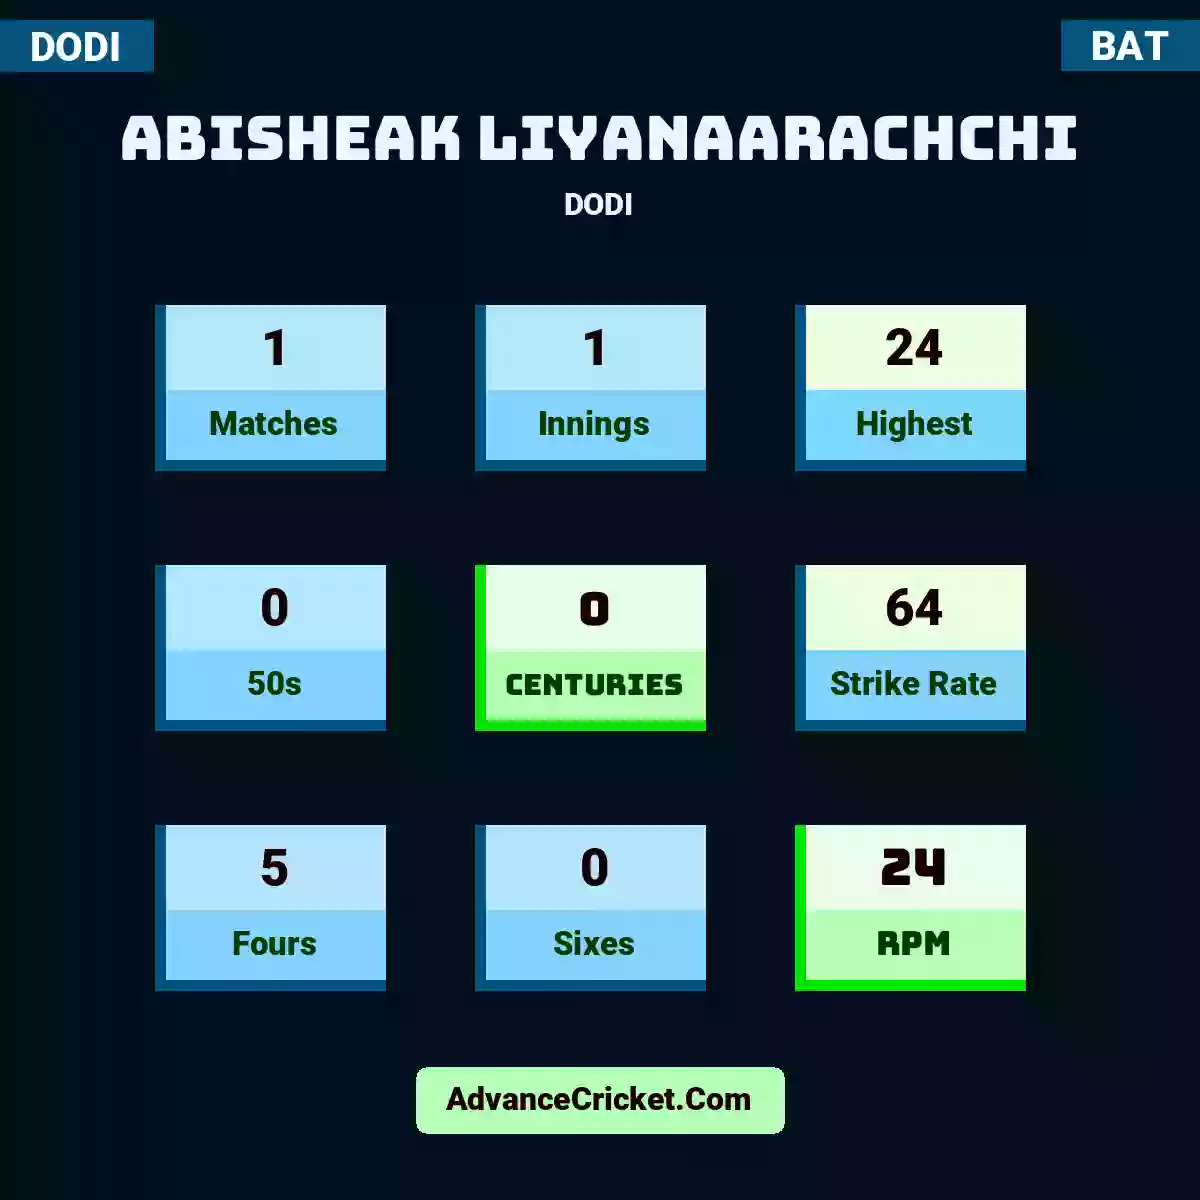 Abisheak Liyanaarachchi DODI , Abisheak Liyanaarachchi played 1 matches, scored 24 runs as highest, 0 half-centuries, and 0 centuries, with a strike rate of 64. A.Liyanaarachchi hit 5 fours and 0 sixes, with an RPM of 24.